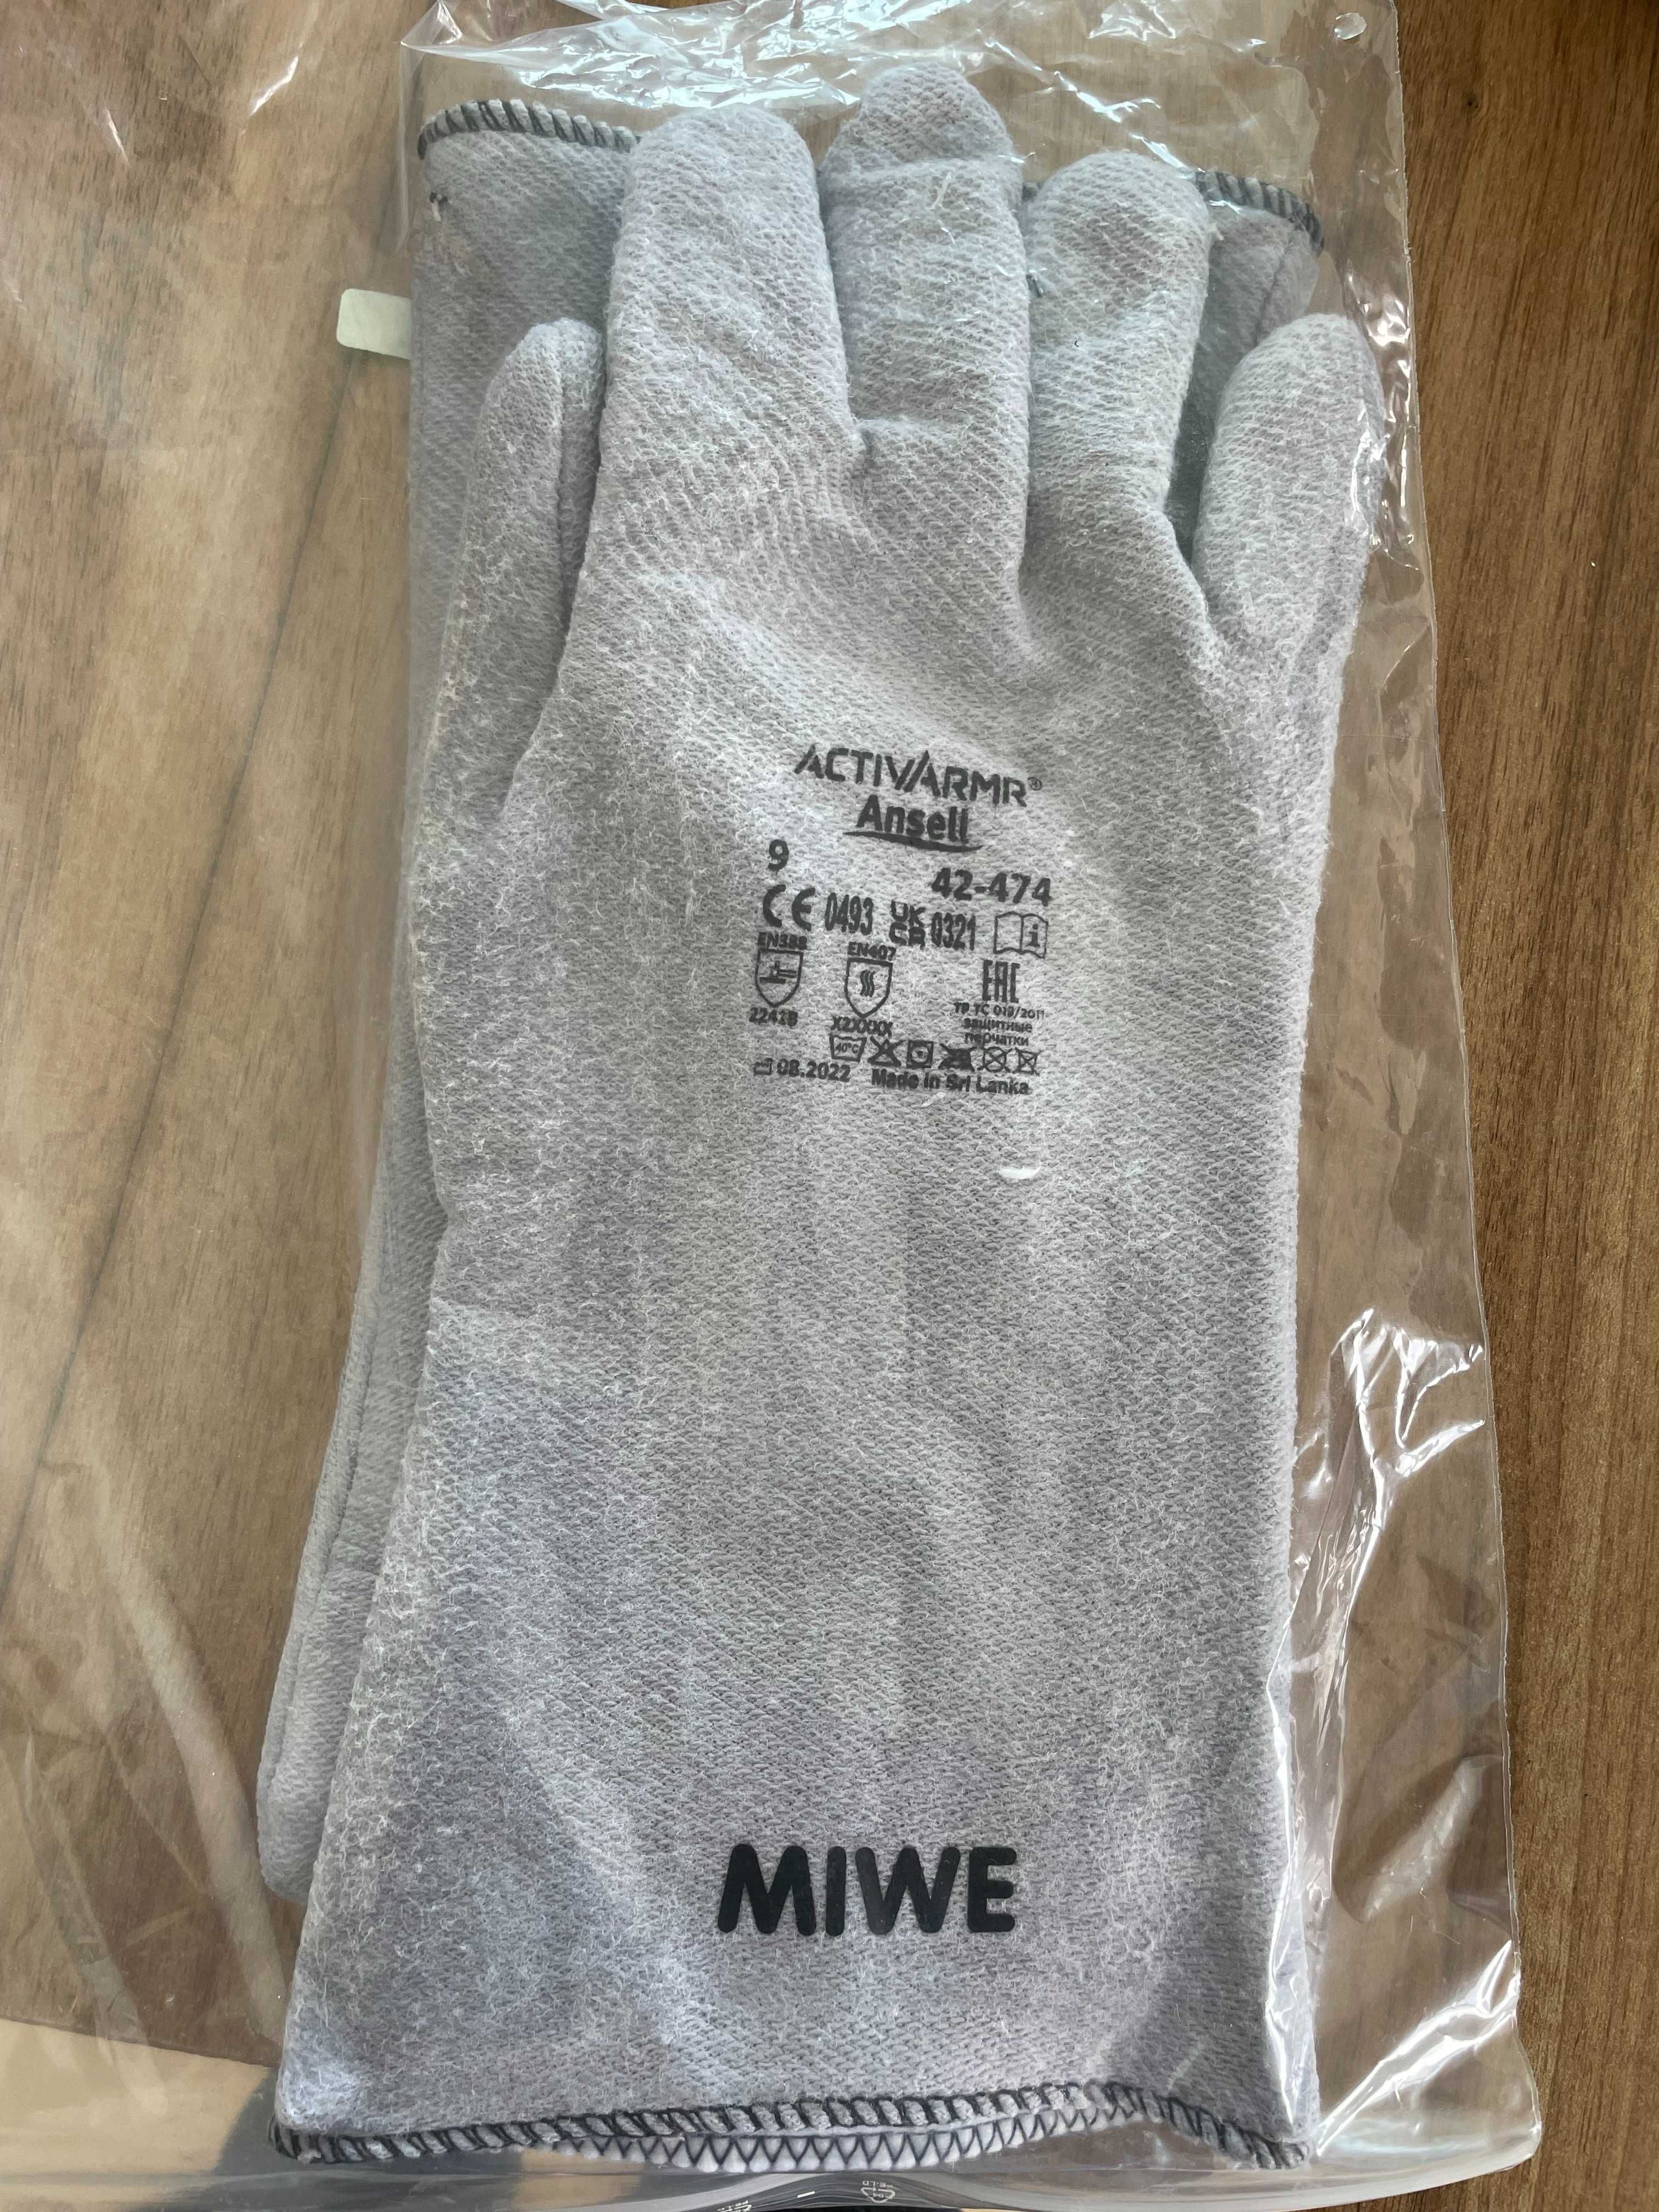 Tермозащитни ръкавици с надпис MIWE